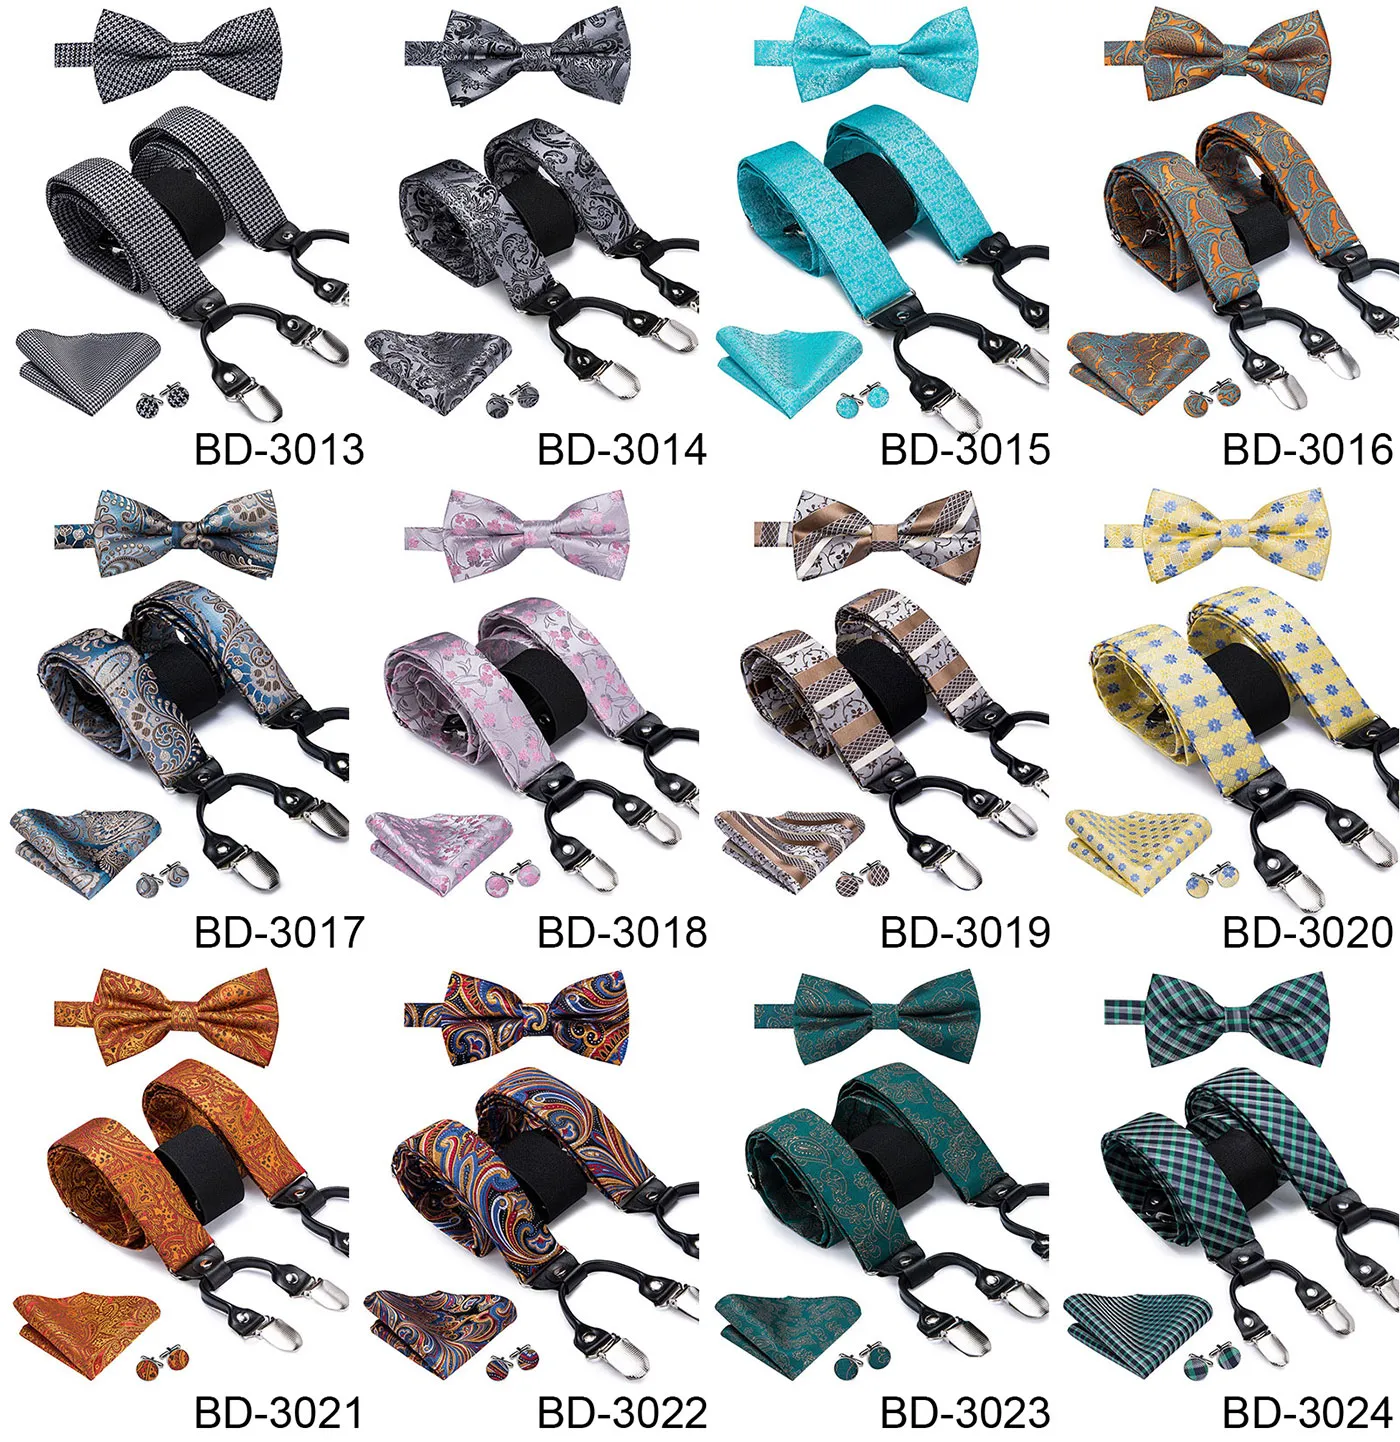 Suspensórios masculinos adultos de seda de luxo, couro, metal, 6 clipes, suspensórios masculinos, festa de casamento, gravata borboleta e suspensórios elásticos vintage masculinos